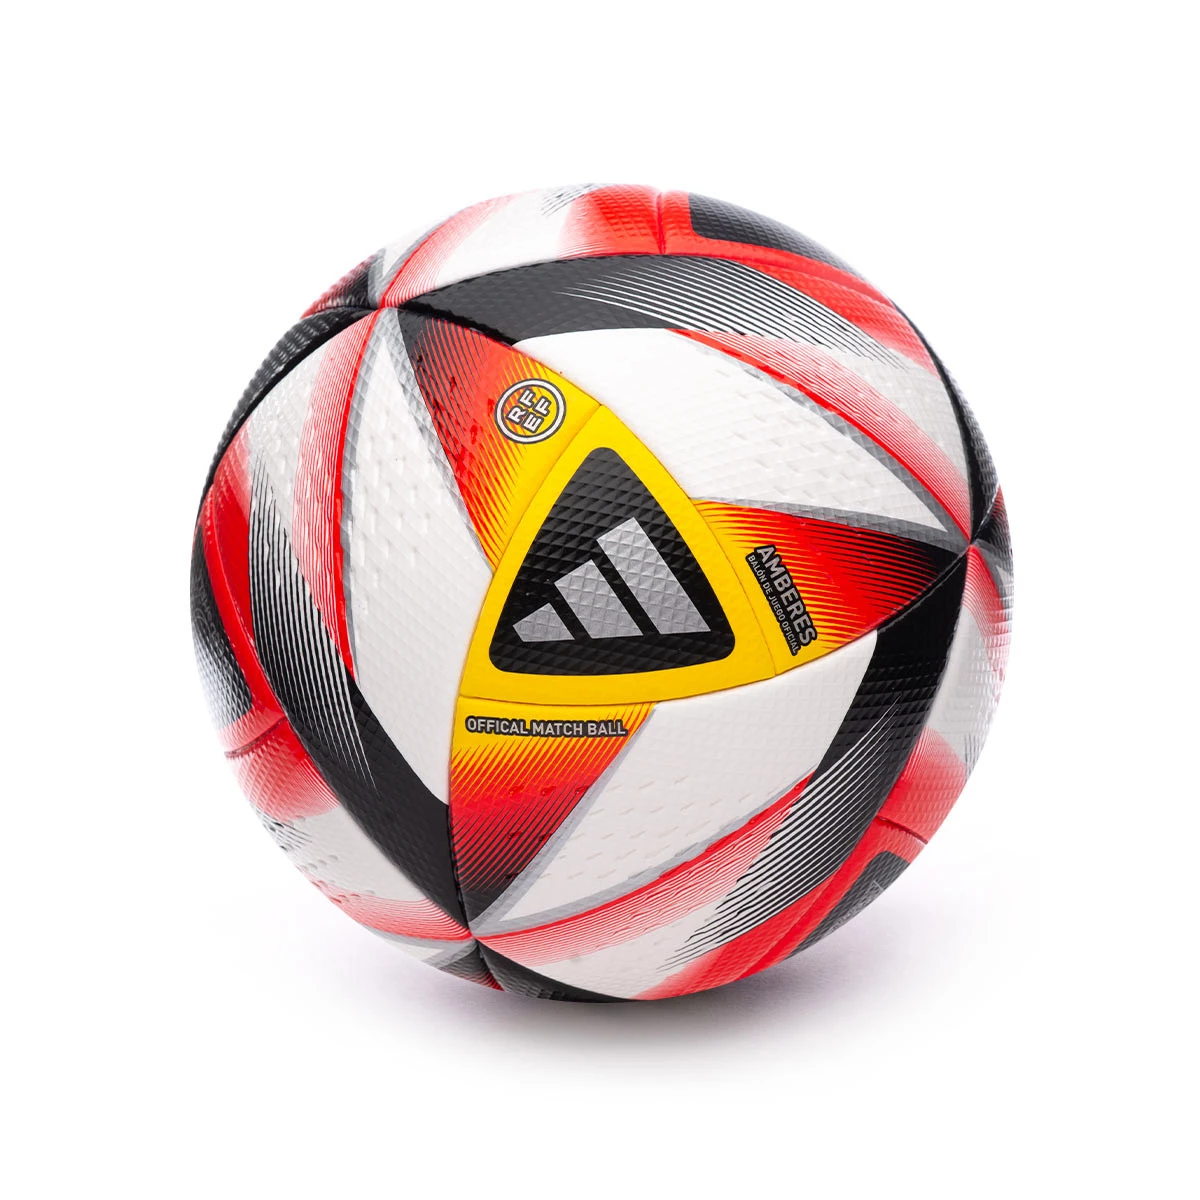 Este es el balón oficial con el que jugará la Deportiva Ponferradina la temporada 2023/2024 en Primera RFEF 2